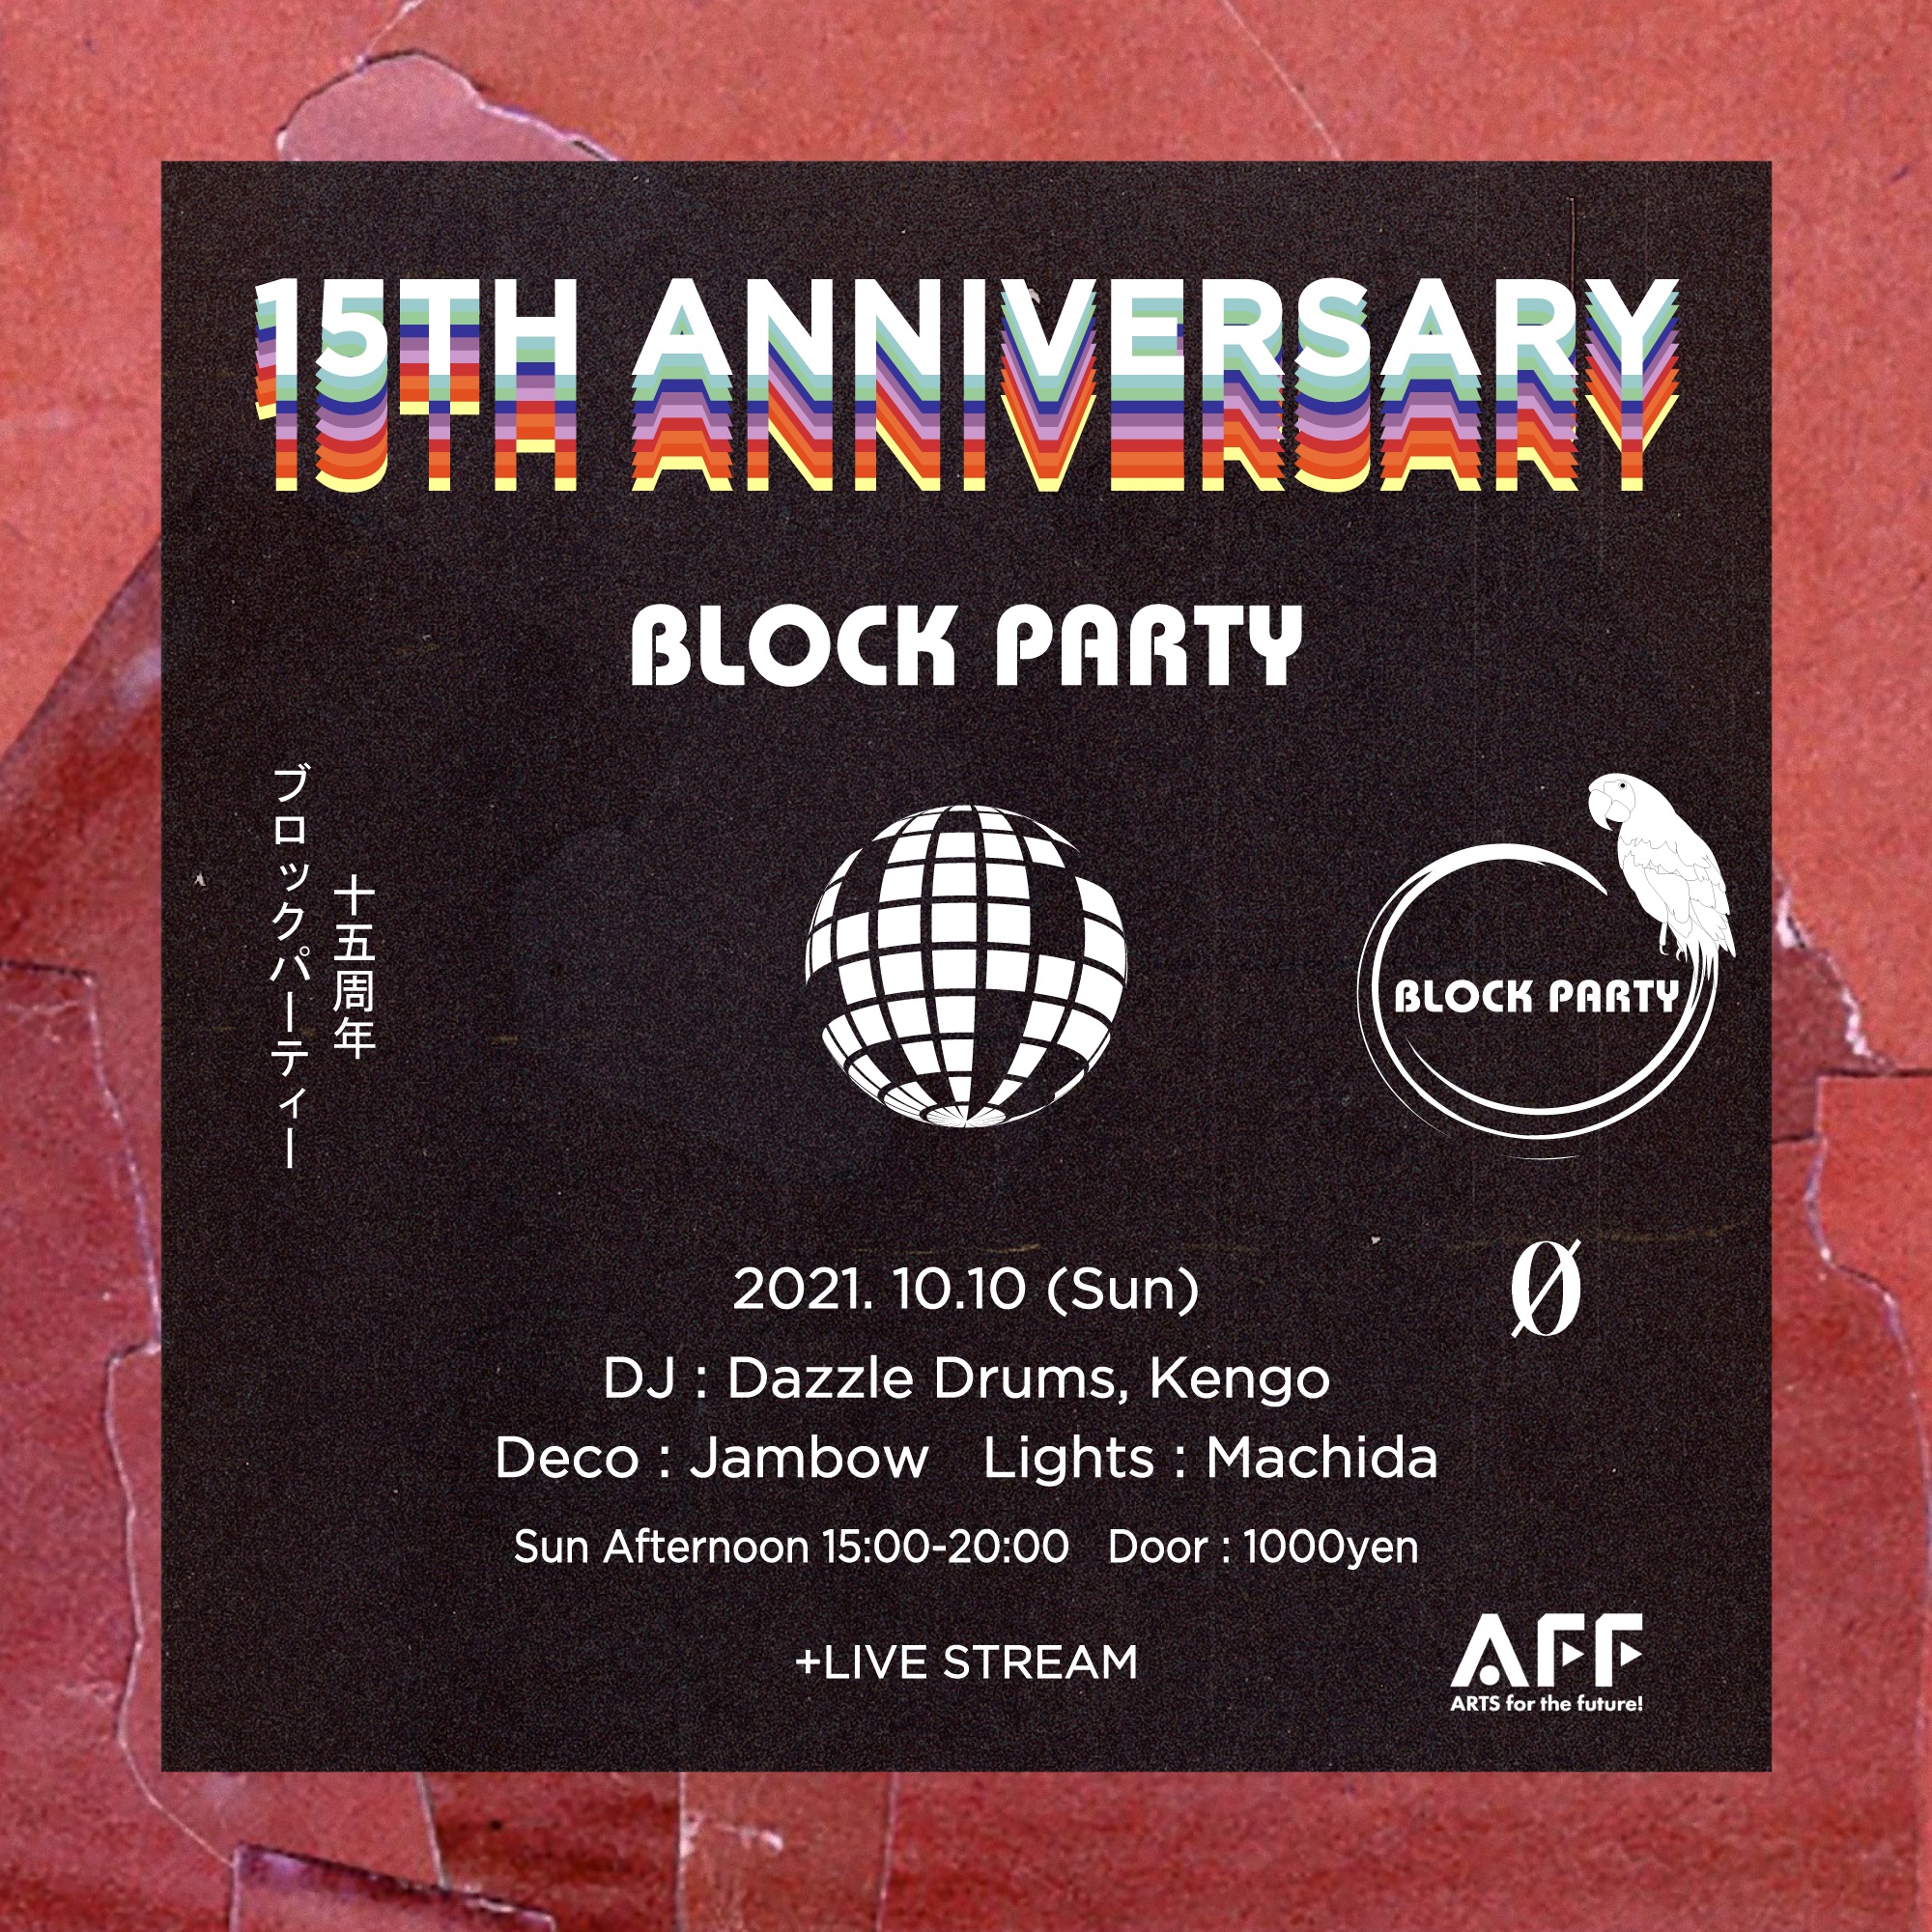 10.10.21 (Sun 15:00-21:00) Block Party “15th Anniversary” + Live Stream @ 0 Zero